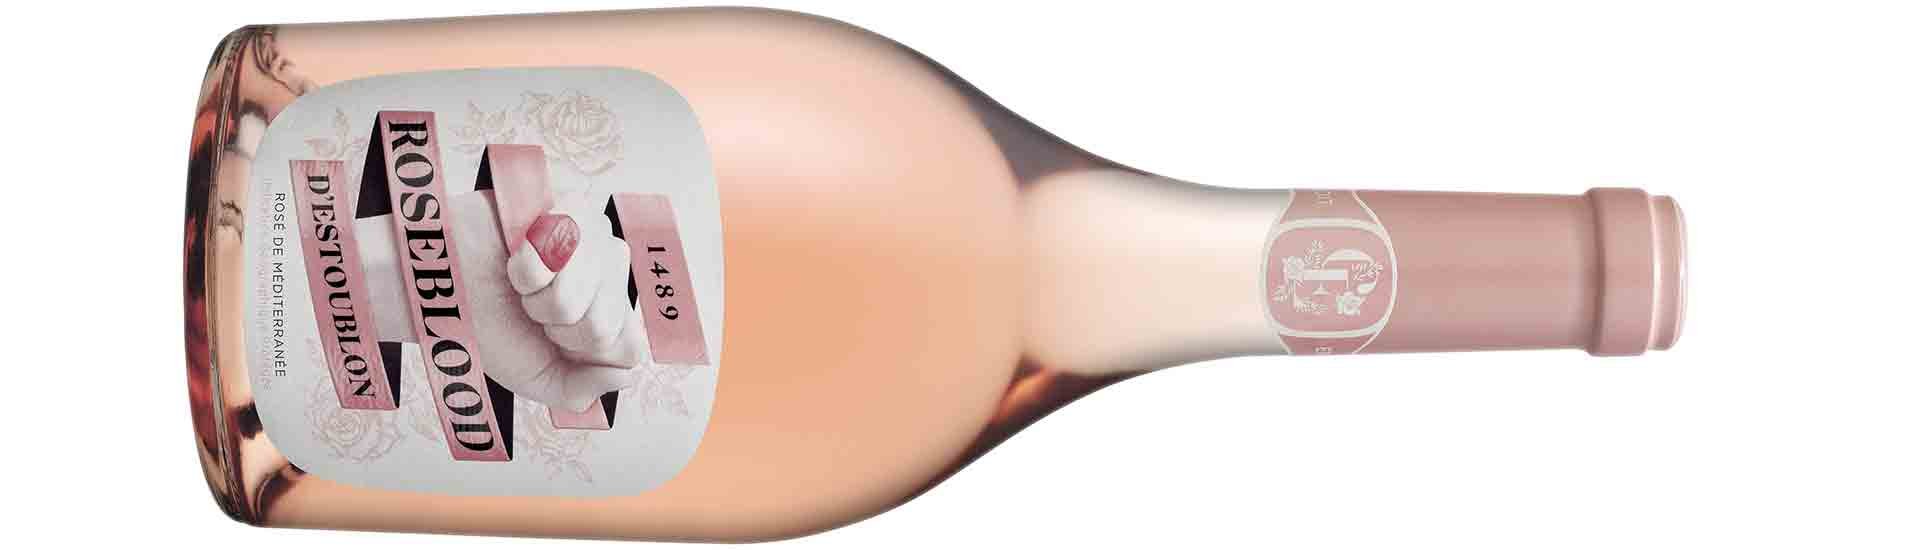 «Roseblood d'Estoublon» soll die Historie des Weinguts widerspiegeln. Der Premium-Roséwein ist ein lebhafter Wein mit erfrischender Mineralik. Bislang ist der Wein nur am französischen Markt erhältlich – das soll sich aber bald ändern.